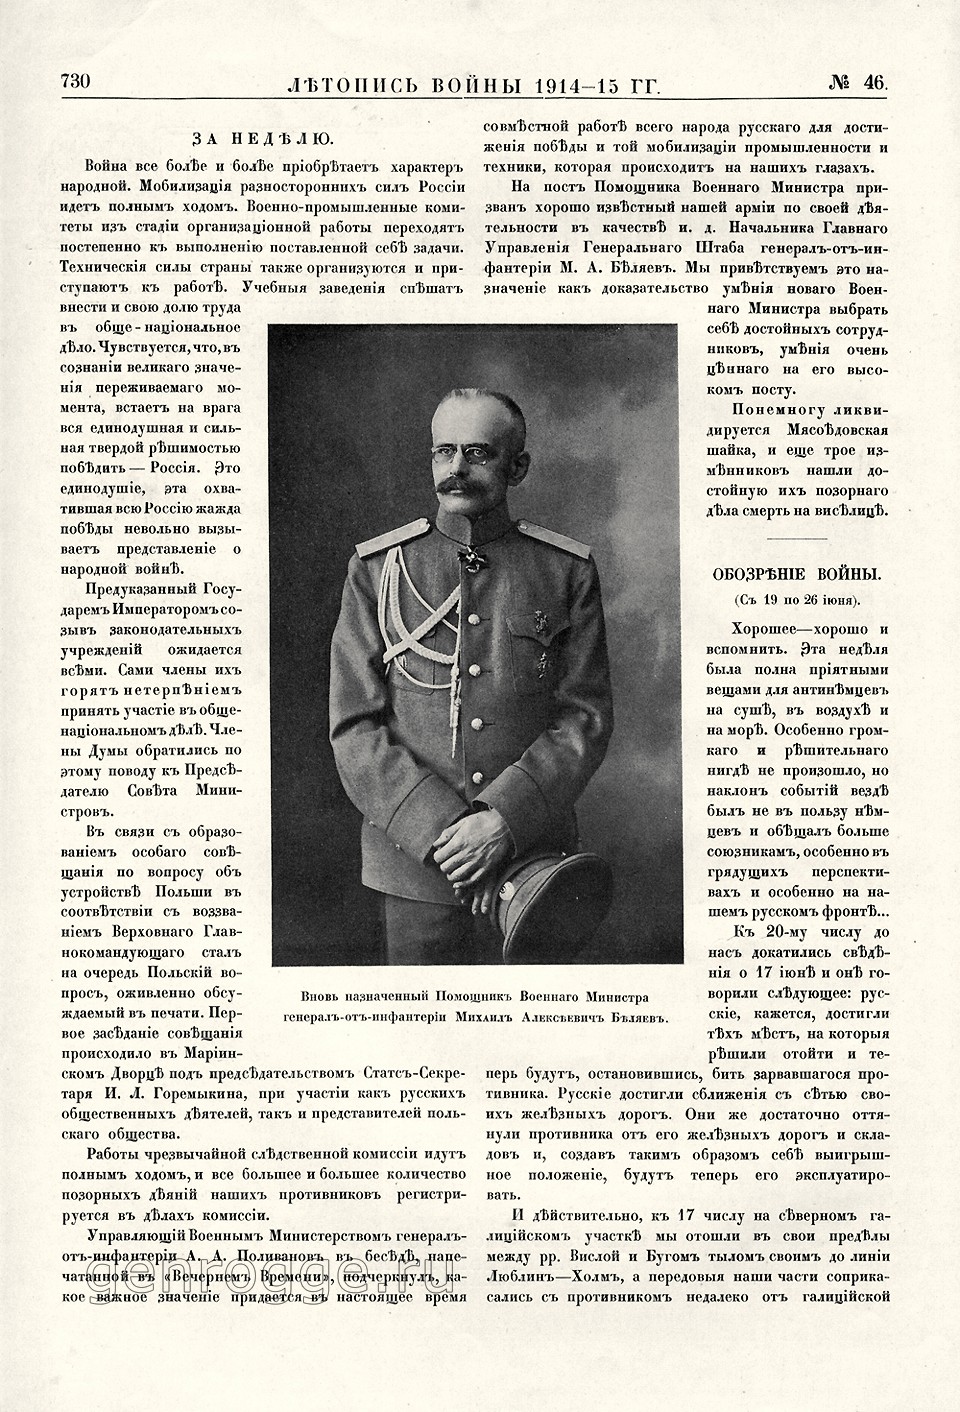   1914-15 . `1915 .,  46, . 730